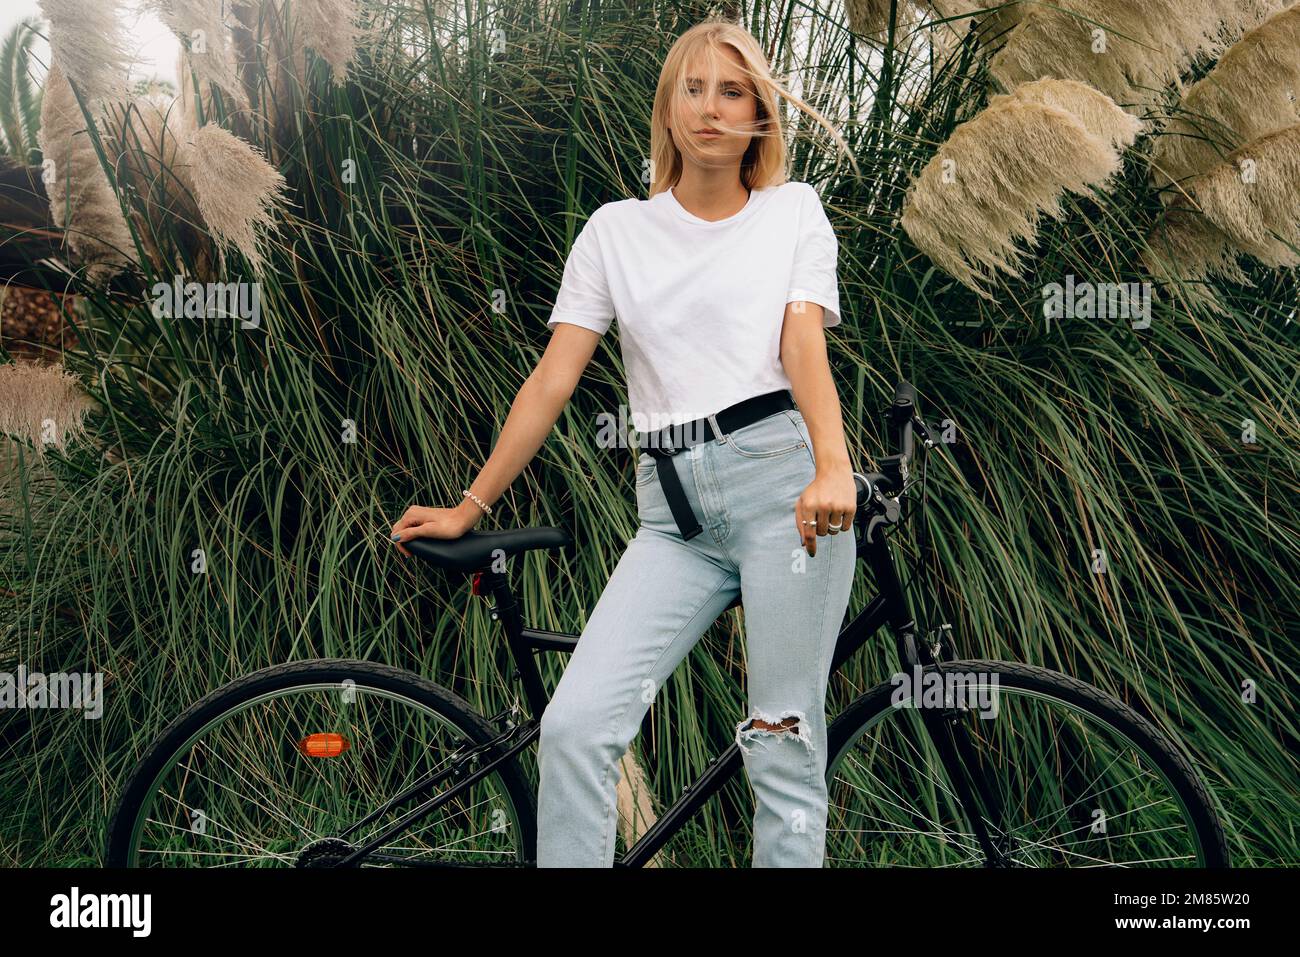 Joven hermosa chica está posando en una camiseta blanca al lado de su bicicleta. Maqueta horizontal. Foto de stock